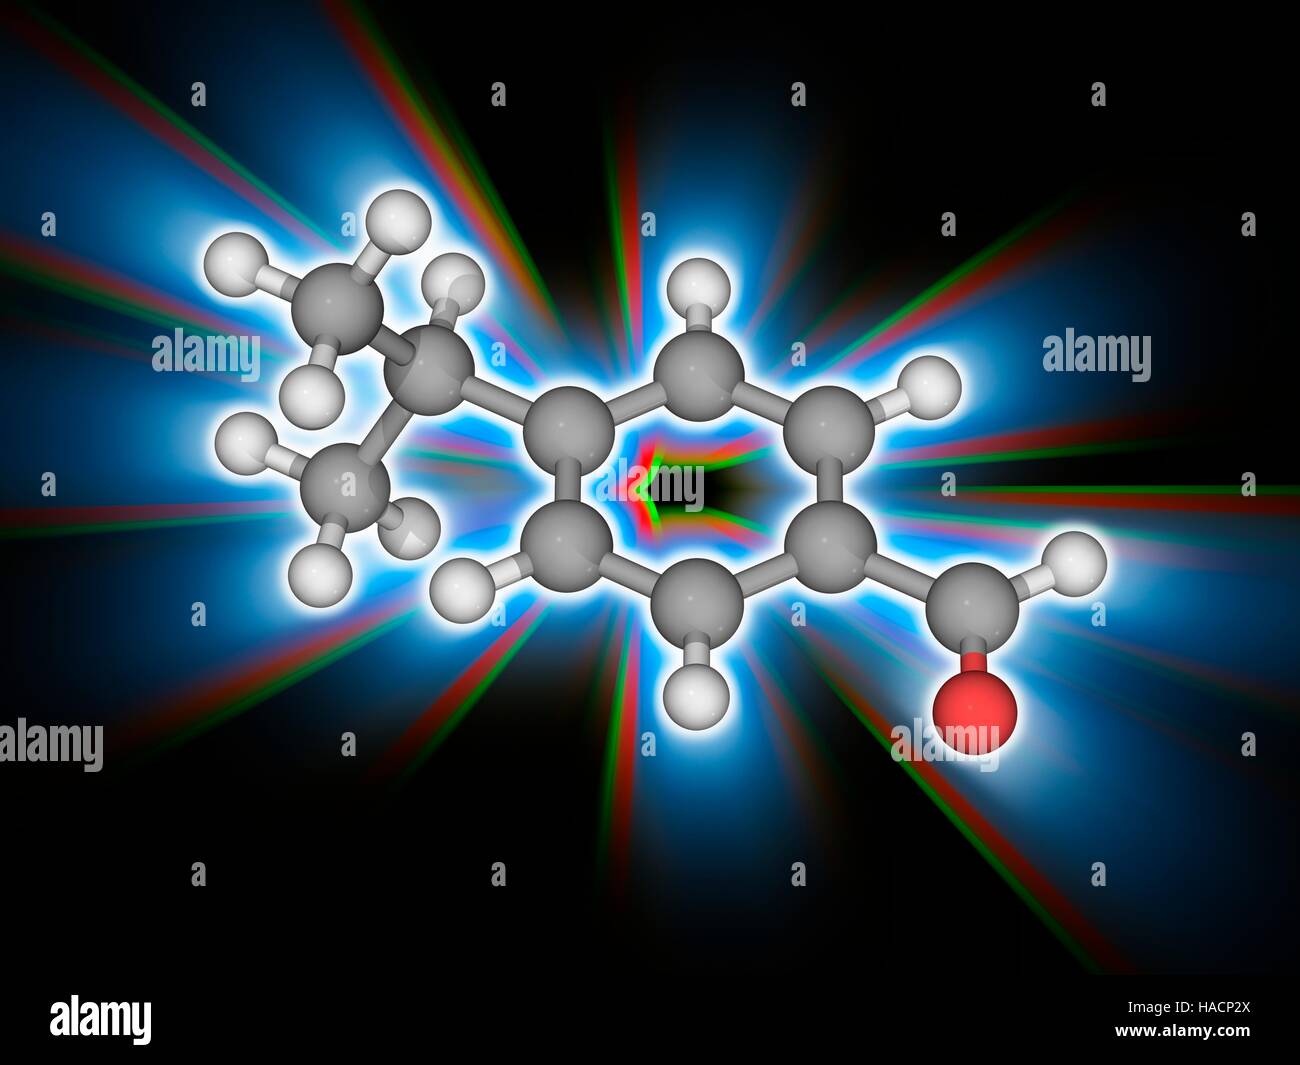 Cuminaldehyde. Il modello molecolare del monoterpene benzaldeide composto cuminaldehyde (C10.H12.o.). Questo è un costituente degli oli essenziali di eucalipto, mirra, cumino e altri. Utilizzato in profumi e cosmetici. Gli atomi sono rappresentati da sfere e sono codificati a colori: carbonio (grigio), Idrogeno (bianco) e ossigeno (rosso). Illustrazione. Foto Stock